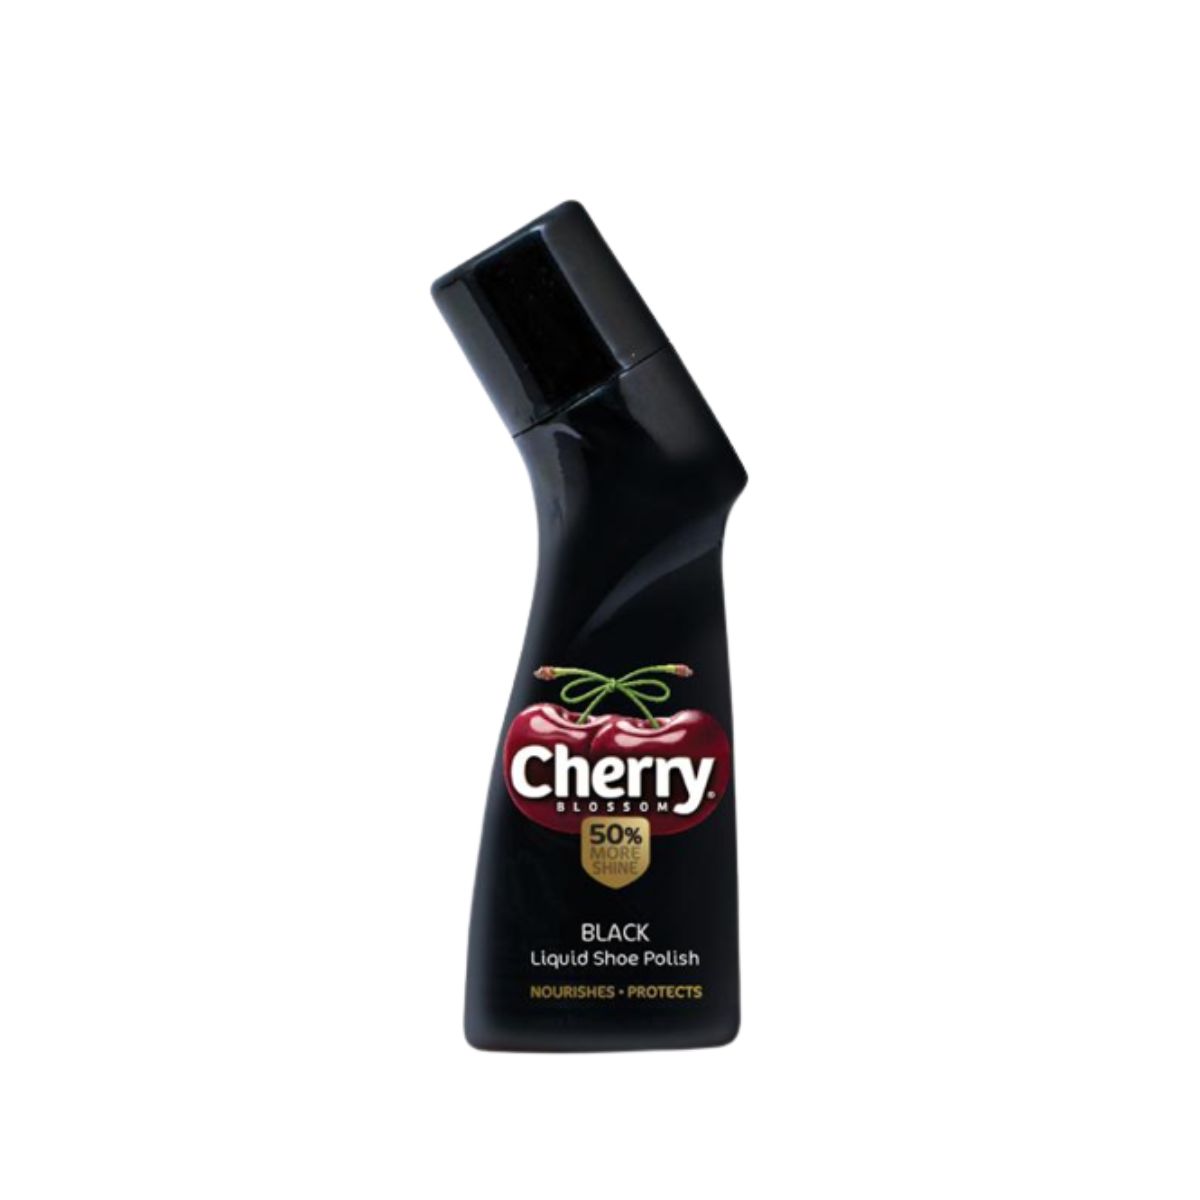 Cherry Blossom Black Liquid Shoe Polish - 75ml